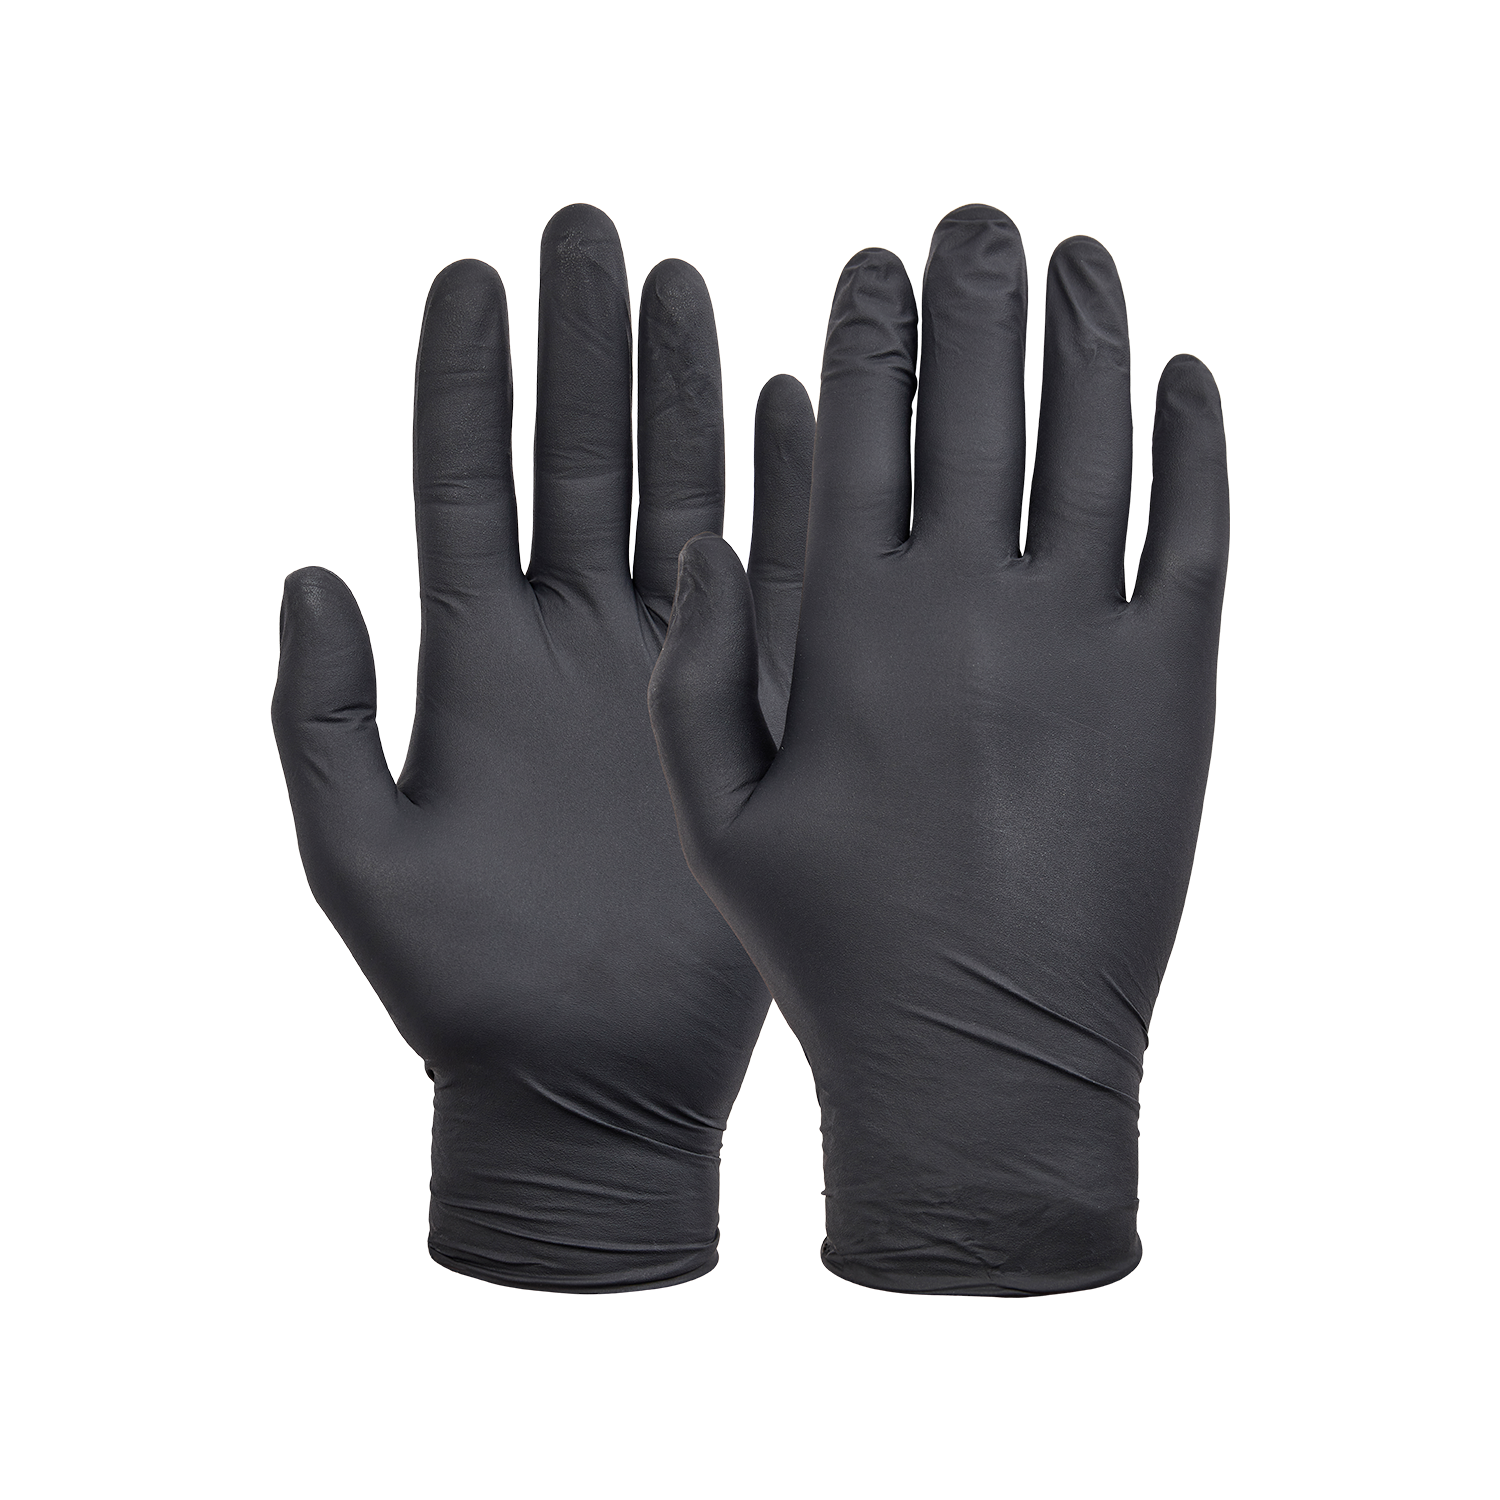 NORSE disposable zwarte nitril handschoenen voor eenmalig gebruik - Maat 9/L